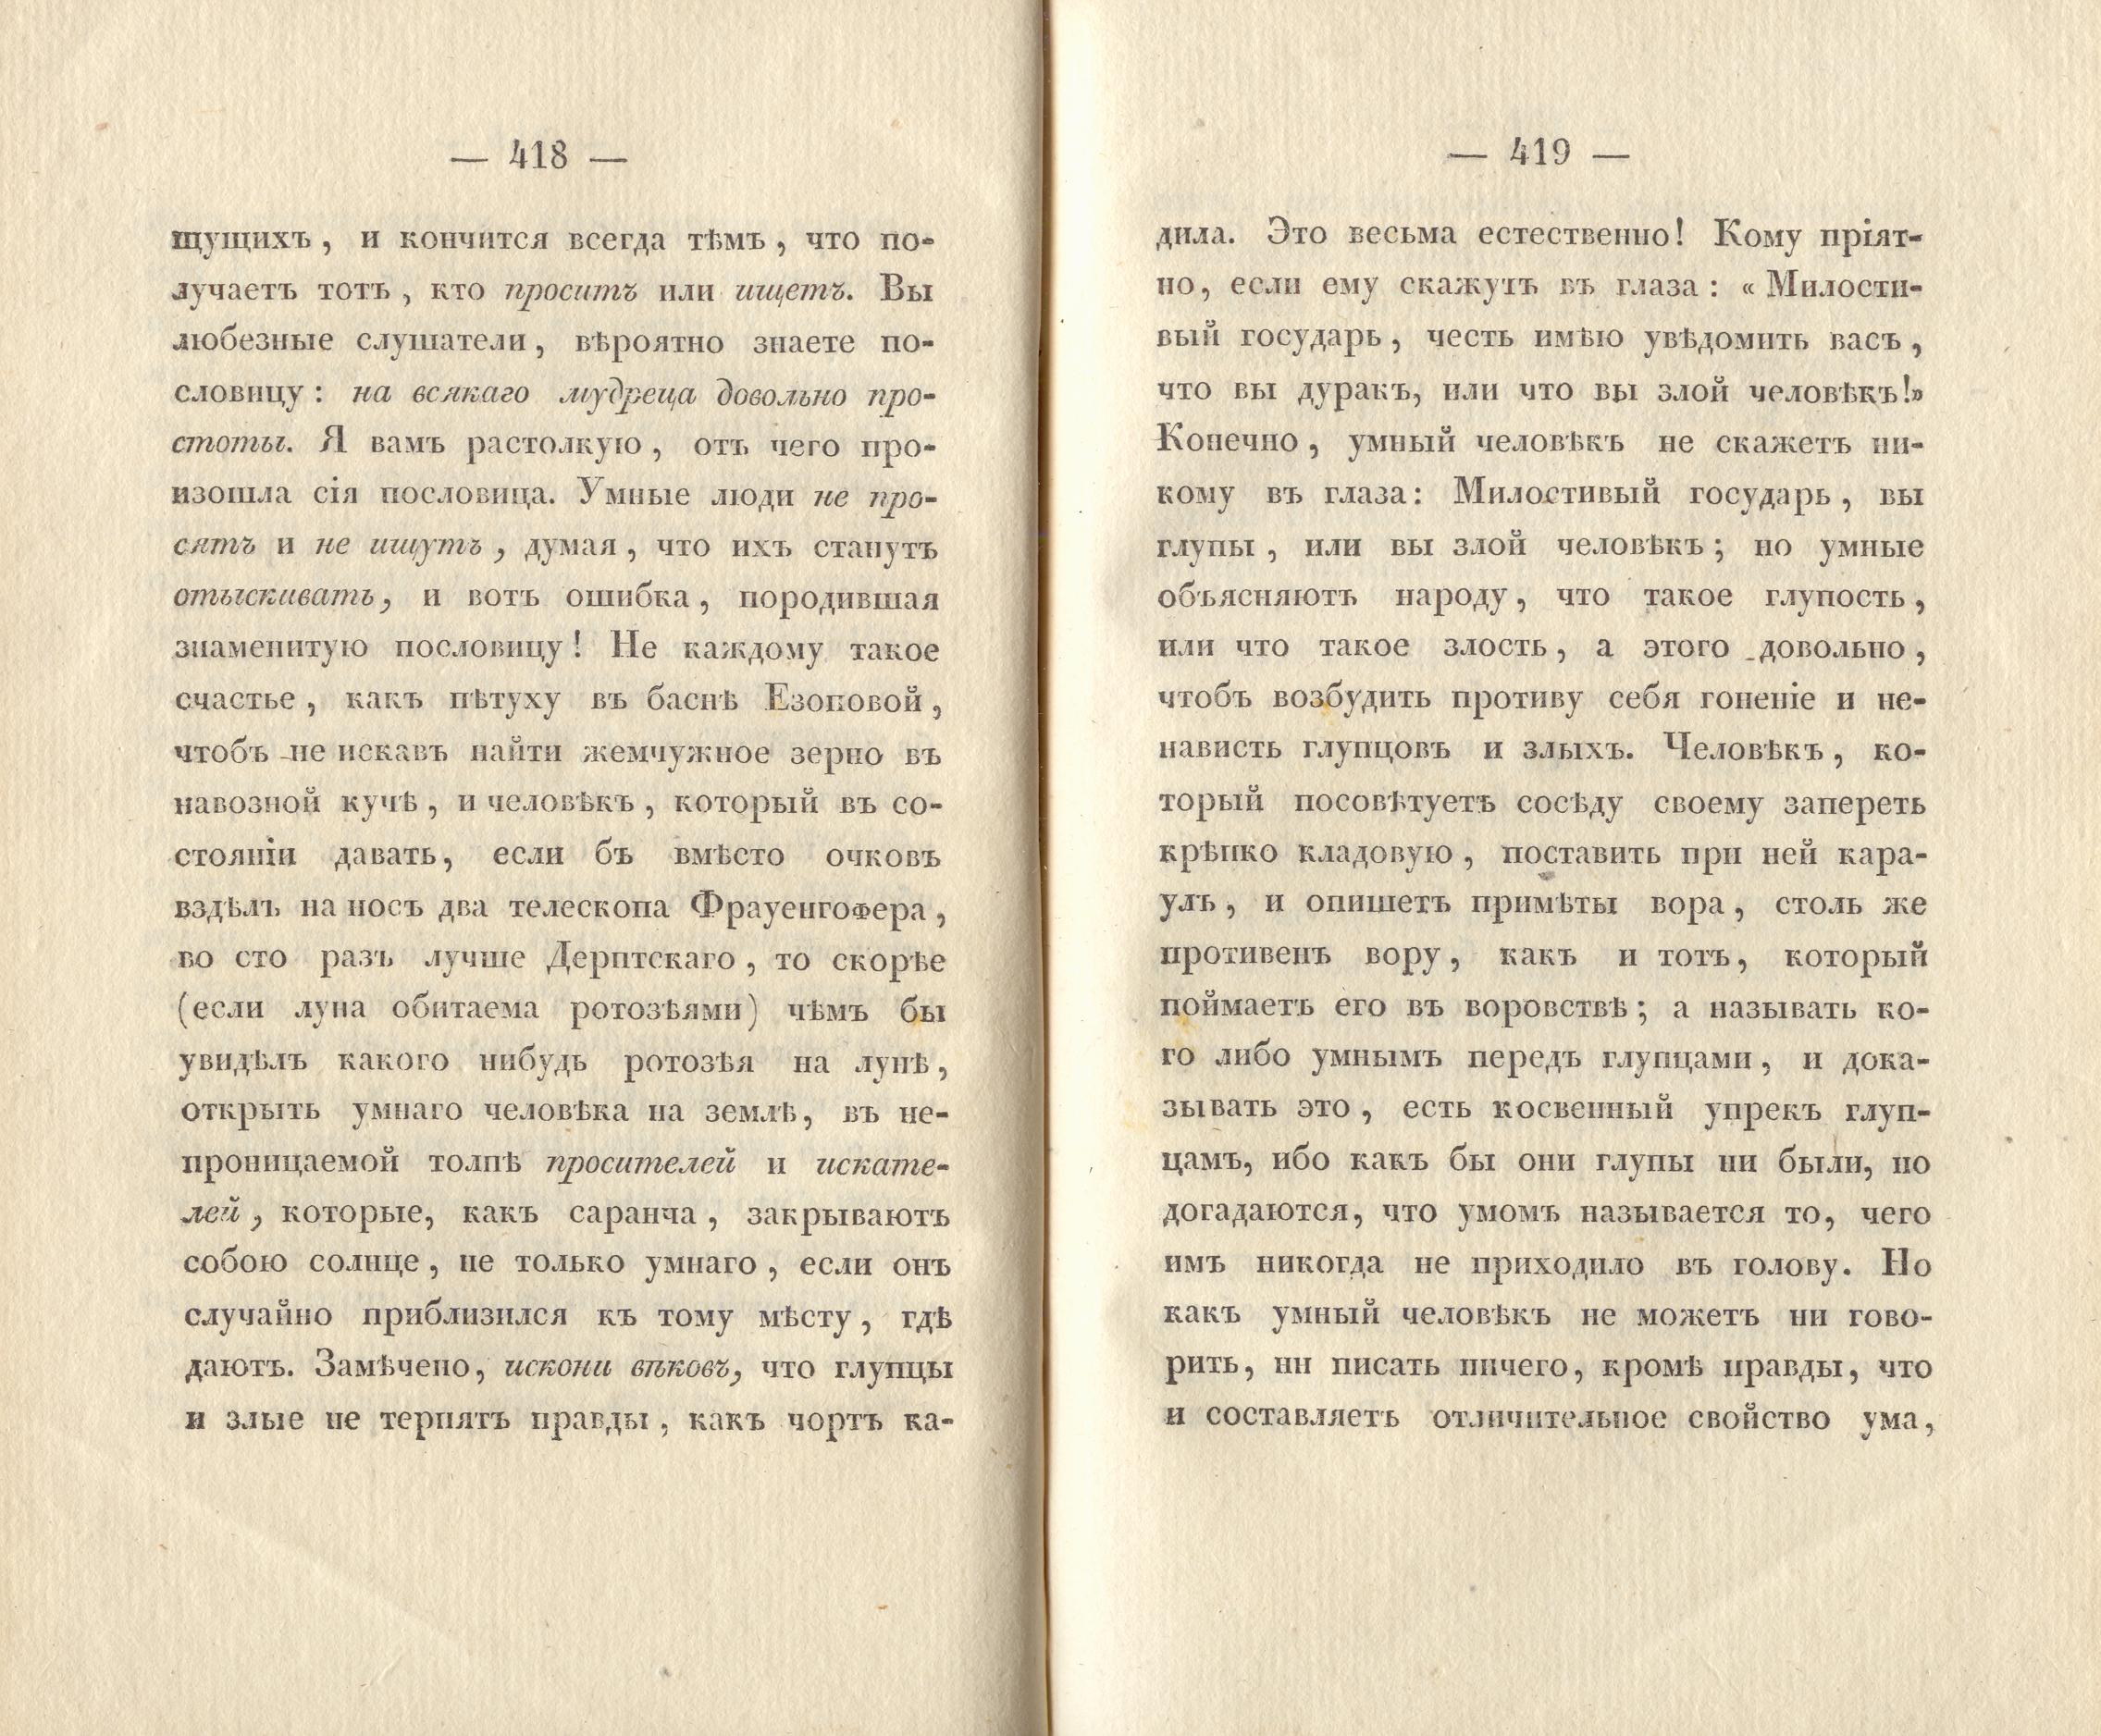 Сочиненія [2] (1836) | 214. (422-423) Main body of text